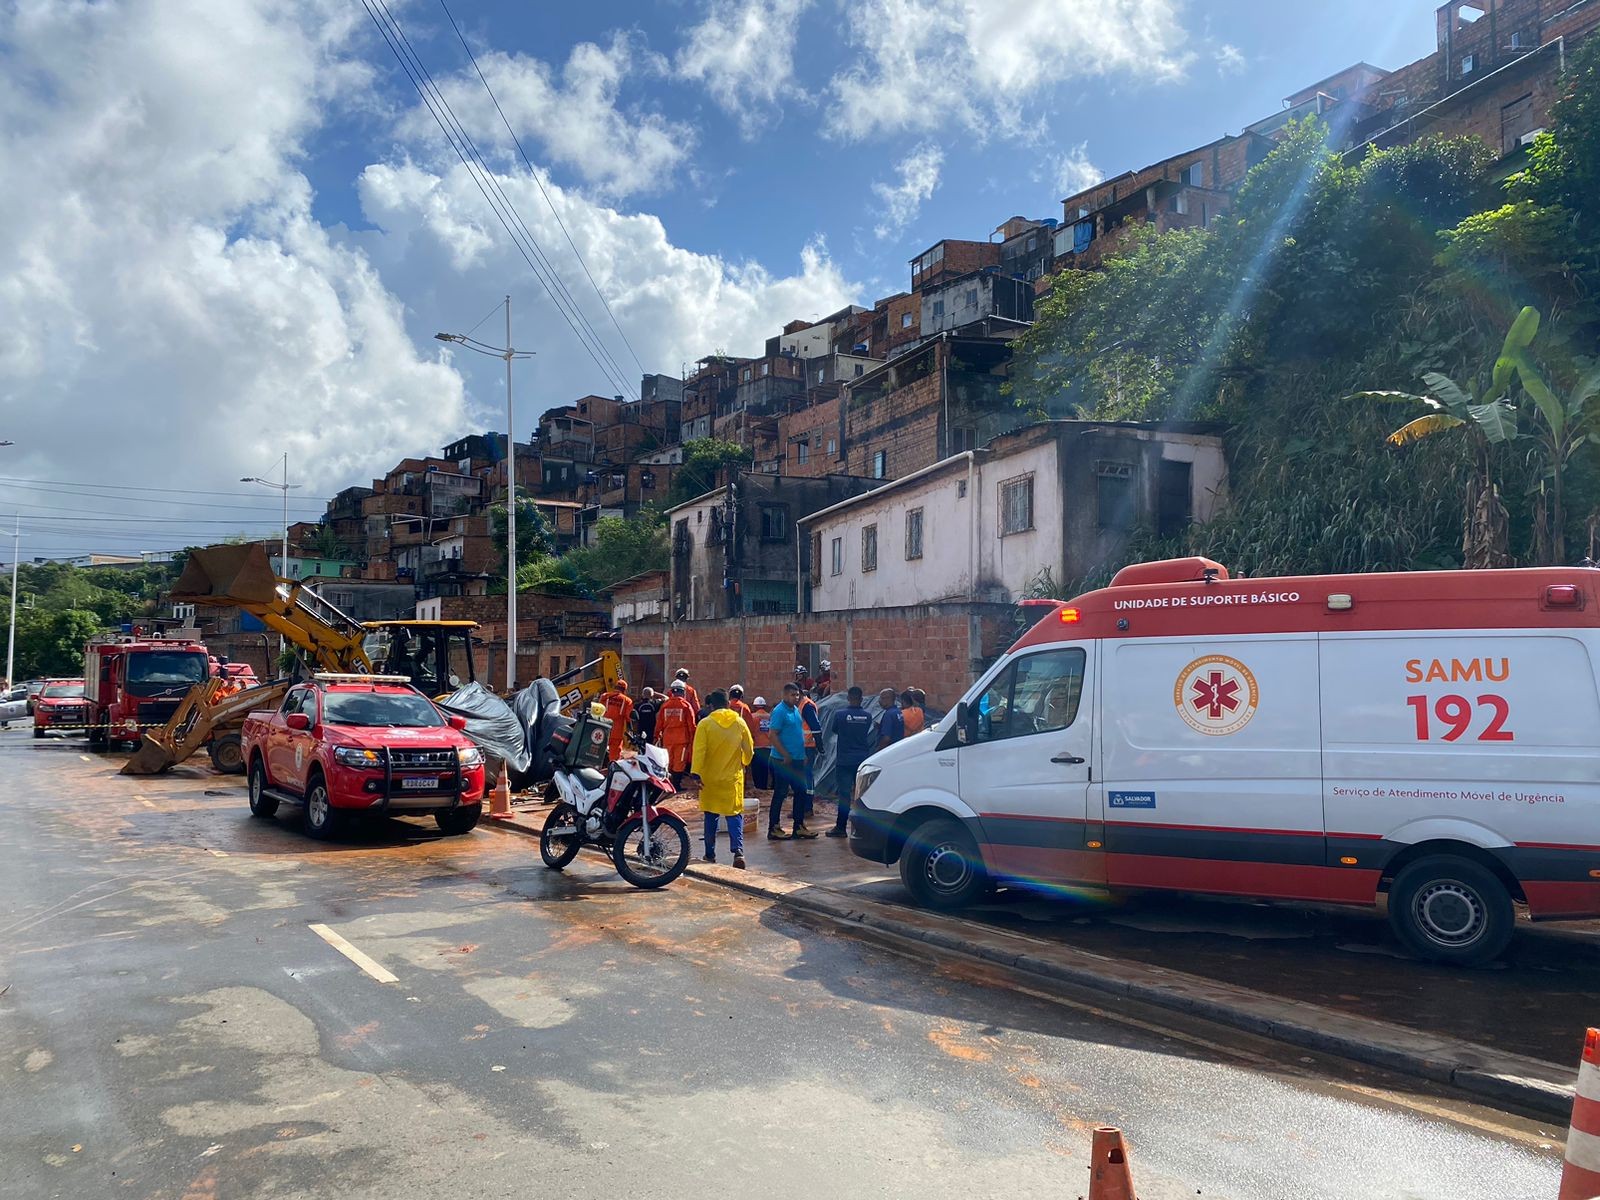 Trabalhador fica parcialmente soterrado após desabamento de escombros em obra na Bahia